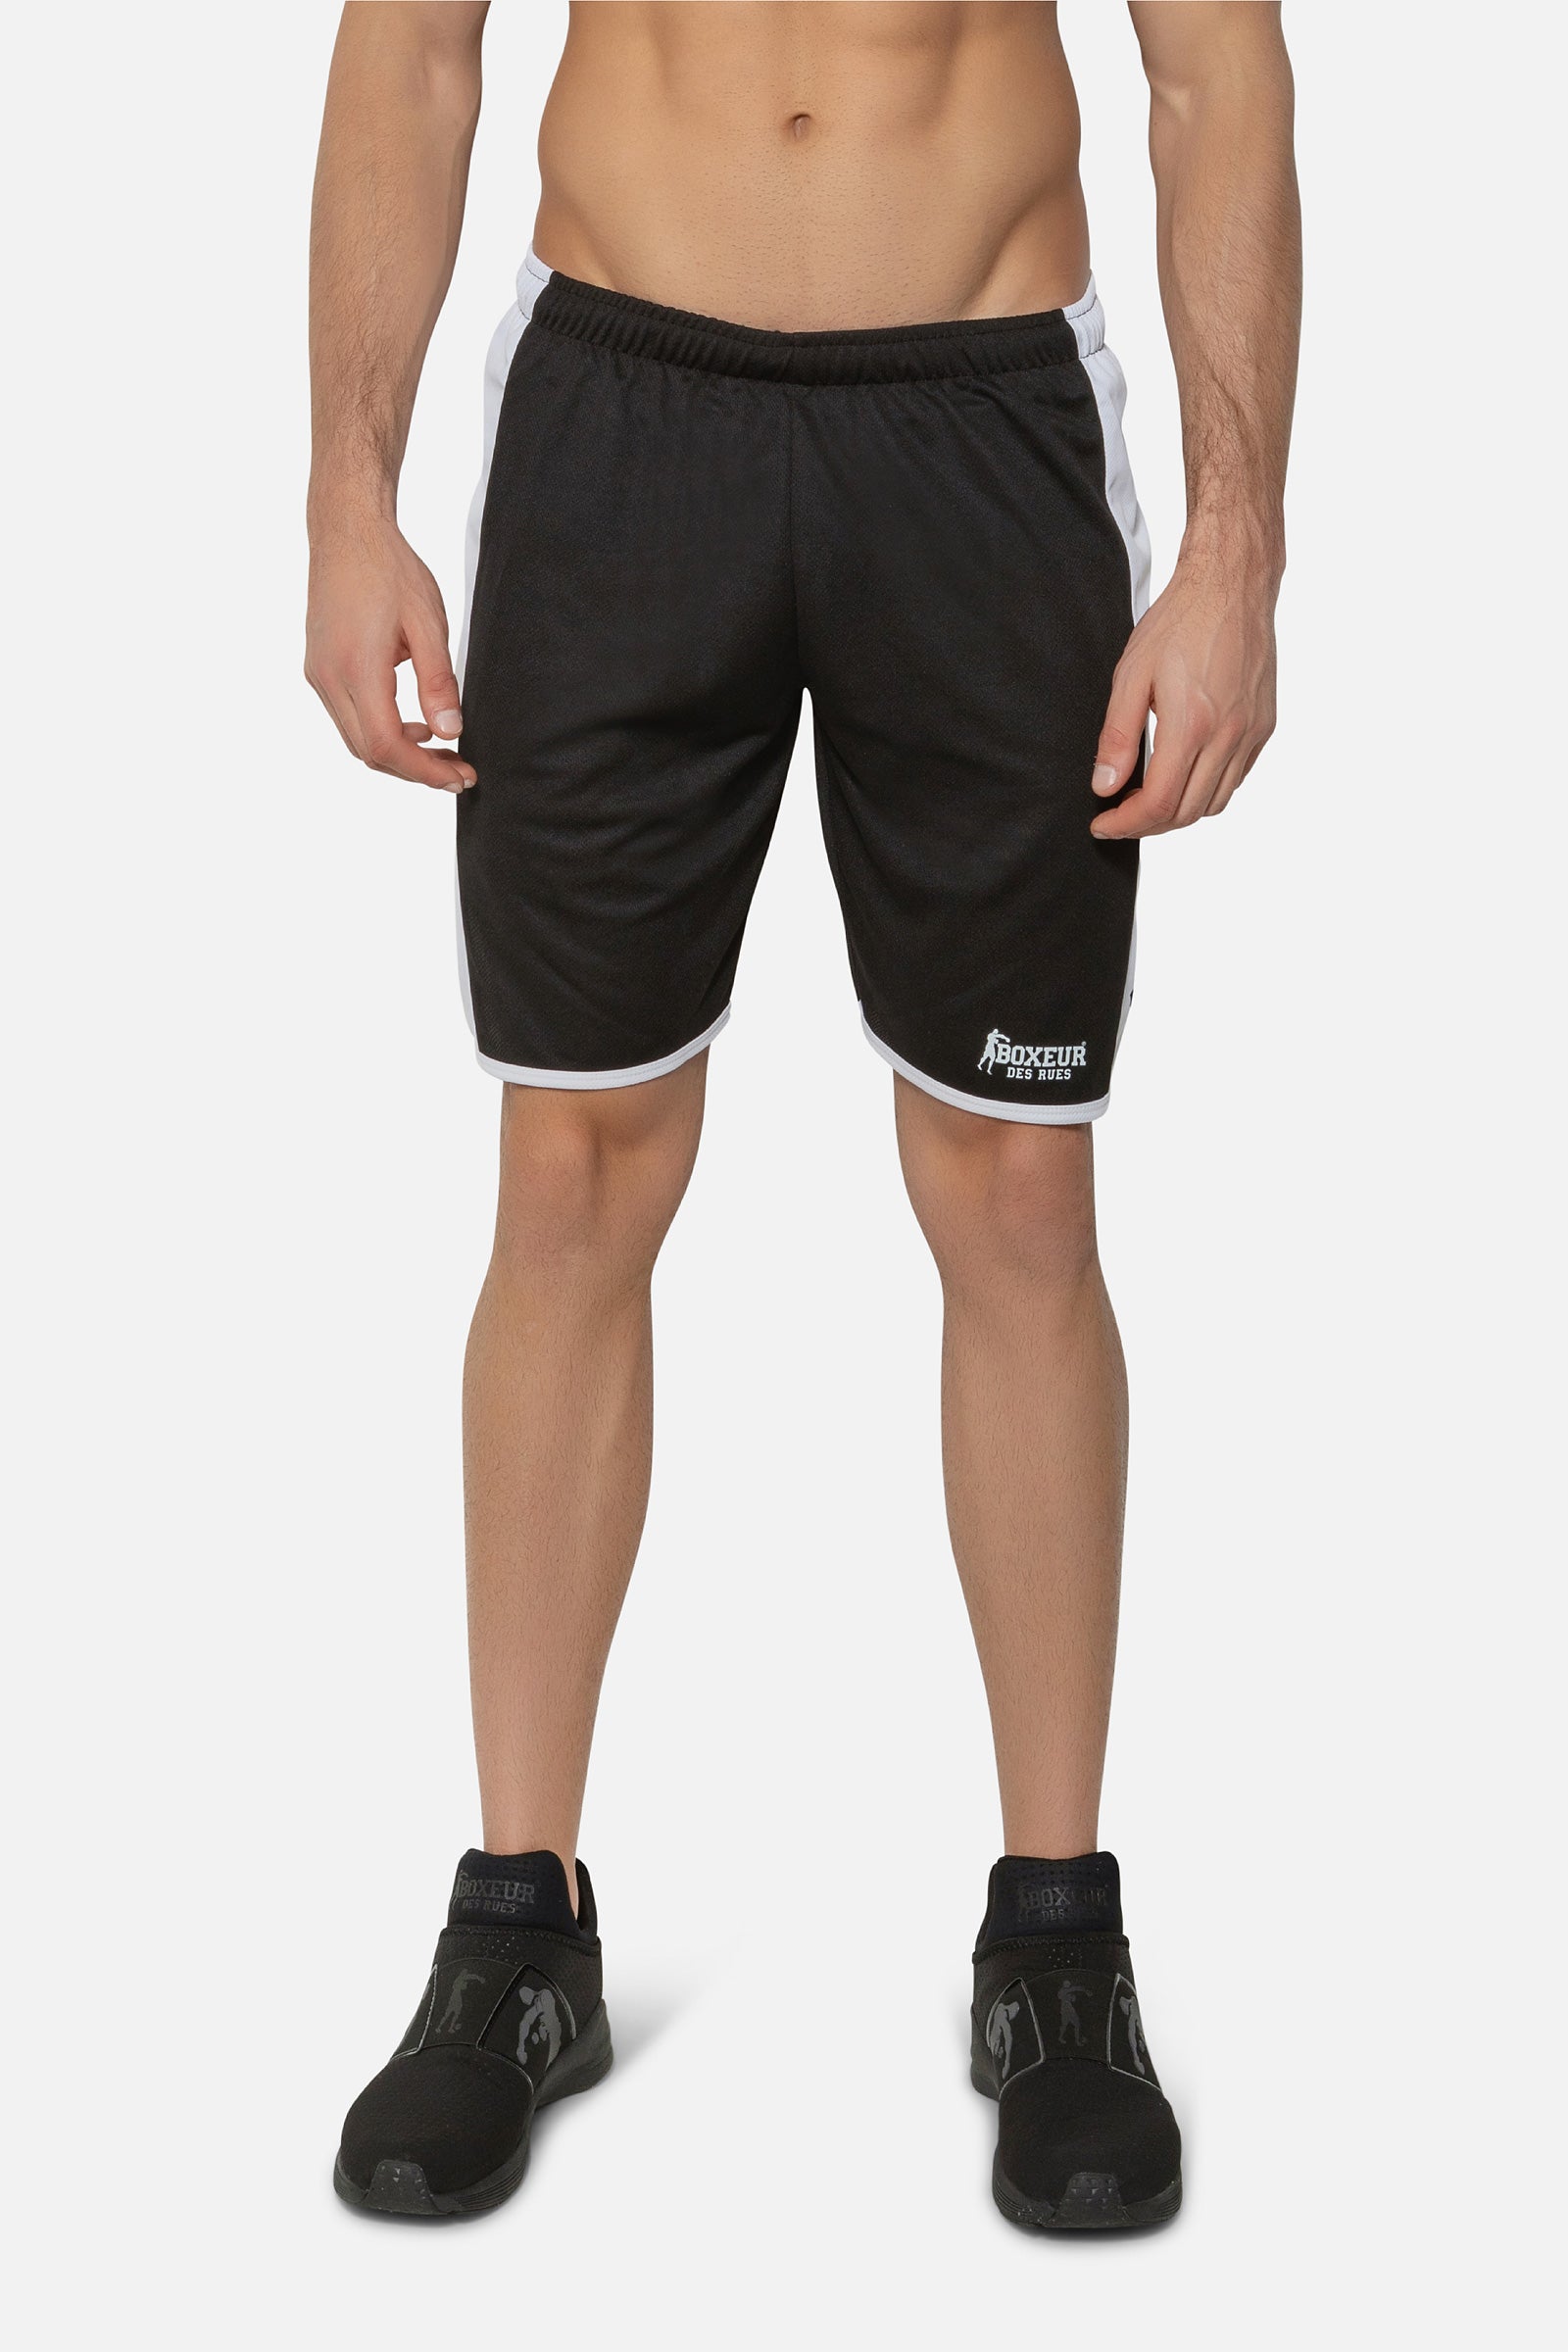 Soccer Basic Shorts in Black Shorts Boxeur des Rues   